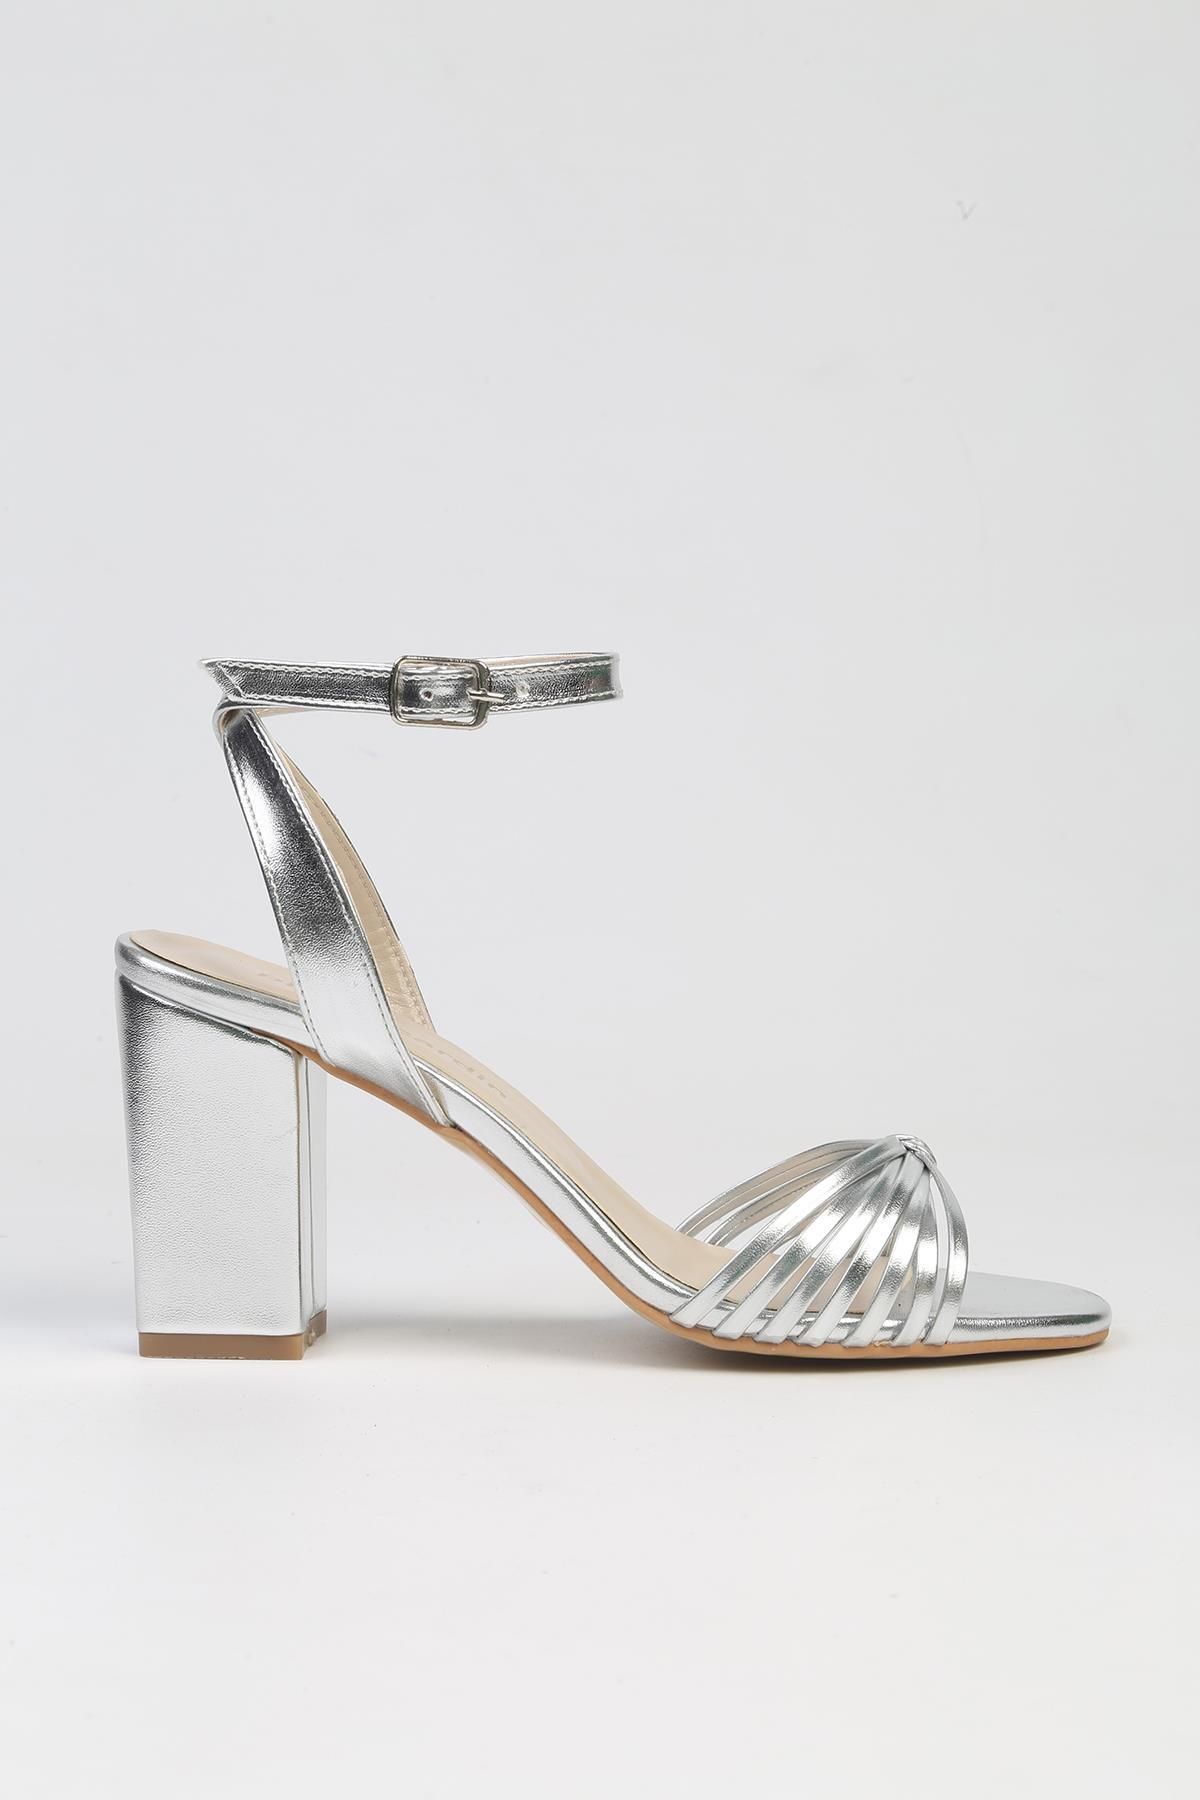 Pierre Cardin ® | PC-53057- 3959 Gümüş-Kadın Topuklu Ayakkabı